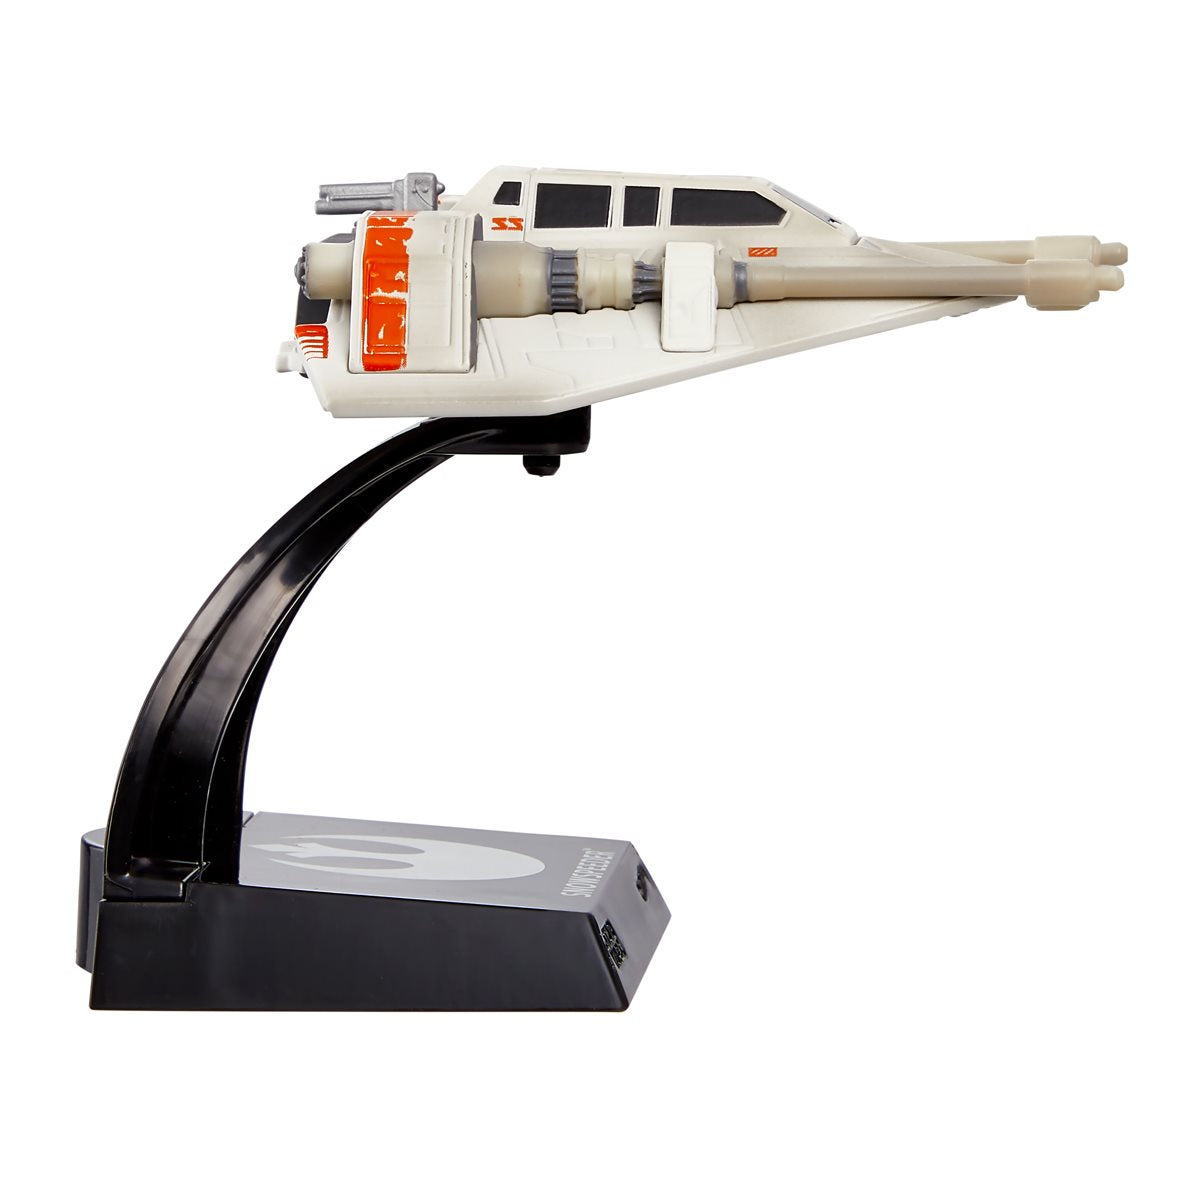 Star Wars Starships Select Premium Diecast Snowspeeder